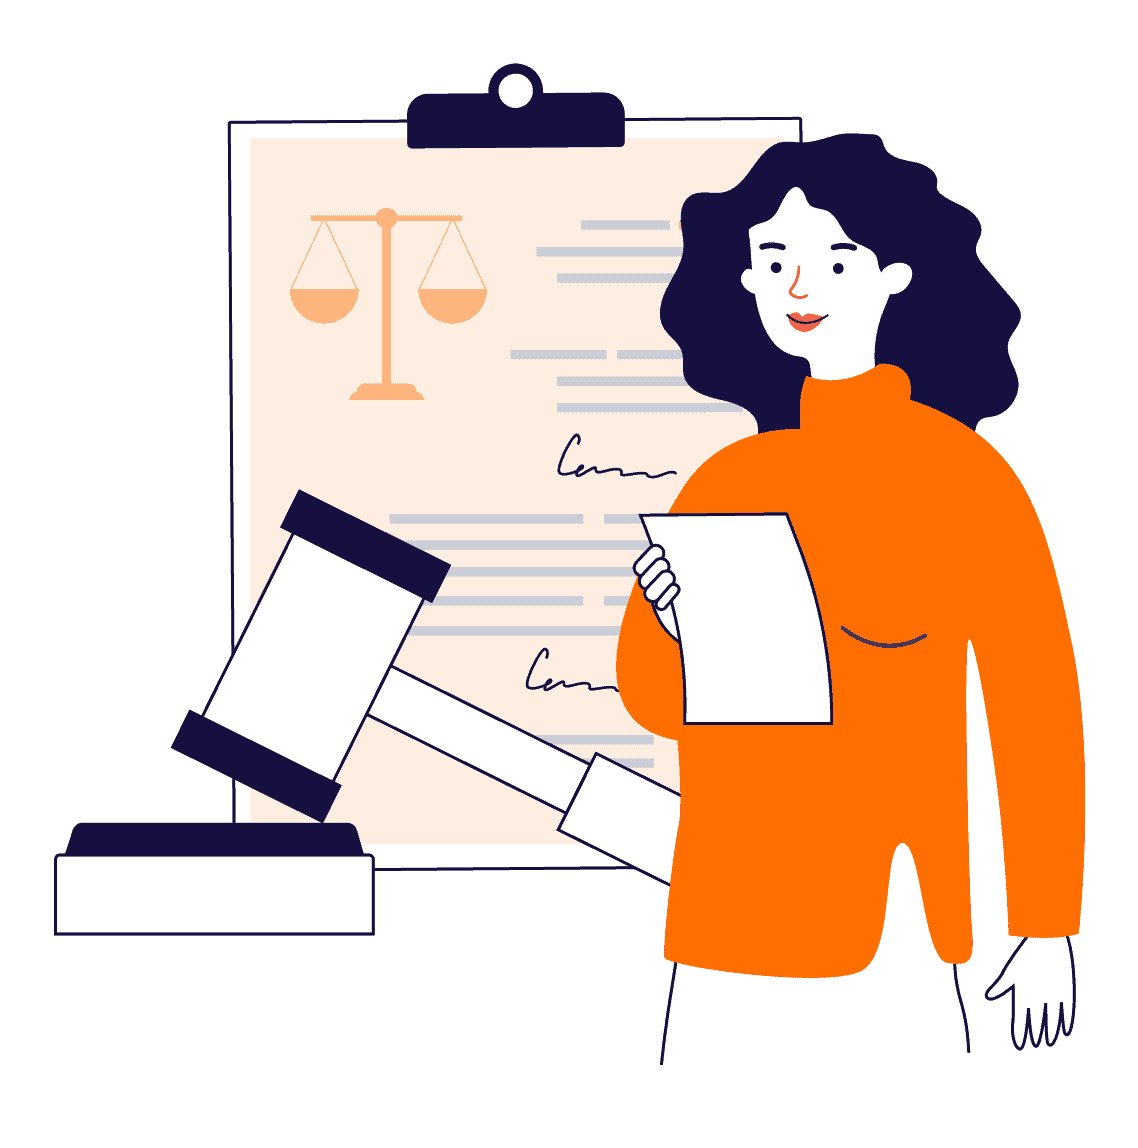 Webjuristene er en kjede av selvstendige jurister, som tilbyr rask, proff og personlig rettshjelp / advokathjelp til halv advokatpris.